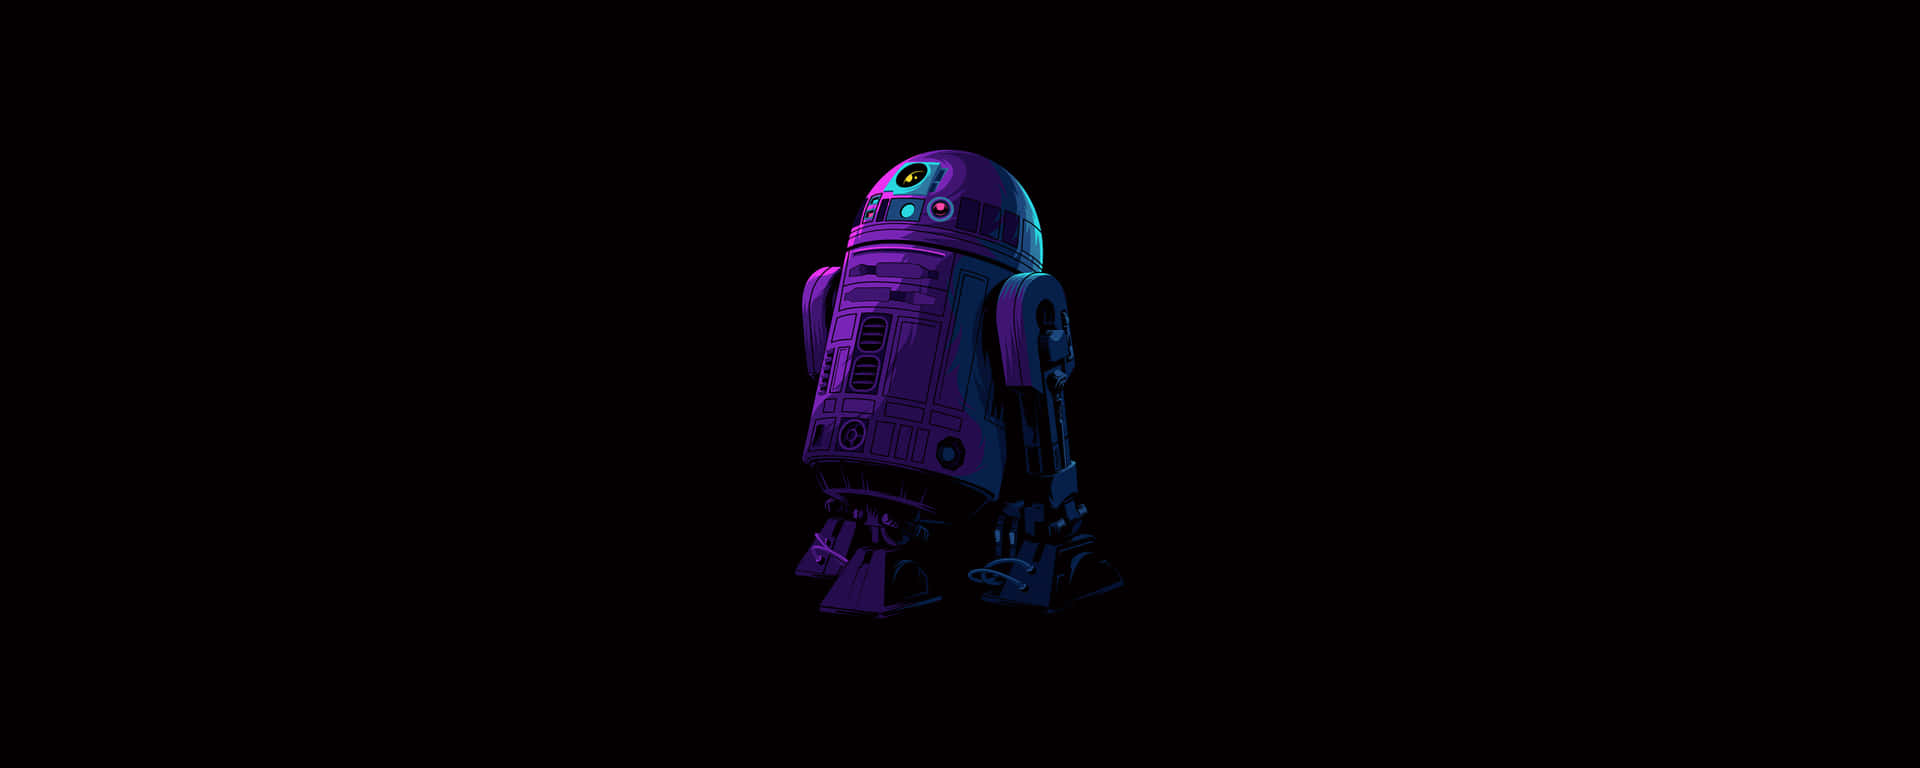 Den ikoniske Droid R2-D2 står højt på en gul blomsterbaggrund. Wallpaper